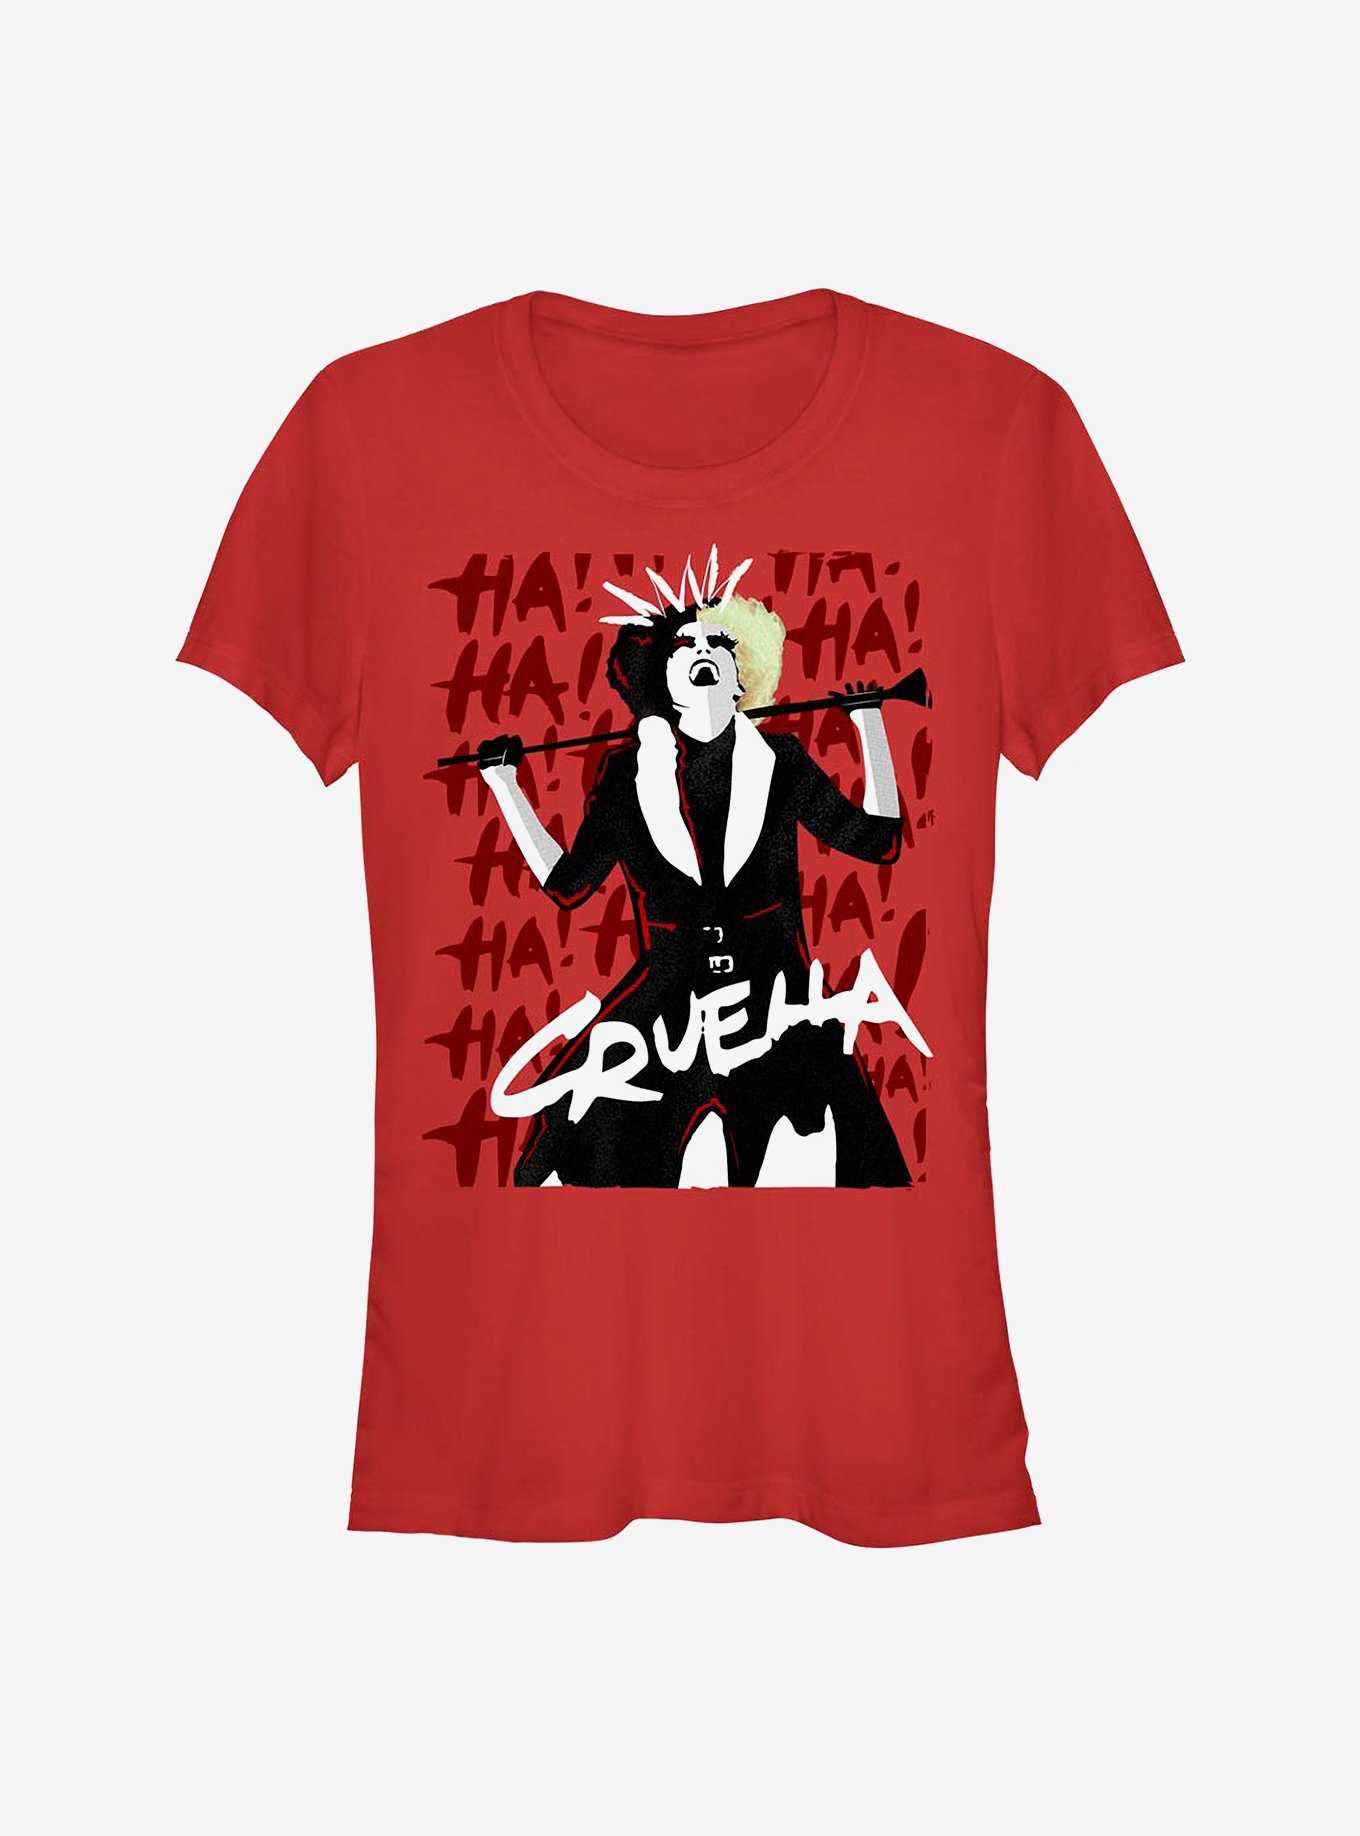 Disney Cruella Cruel Laughter Girls T-Shirt Hot Topic Exclusive, , hi-res